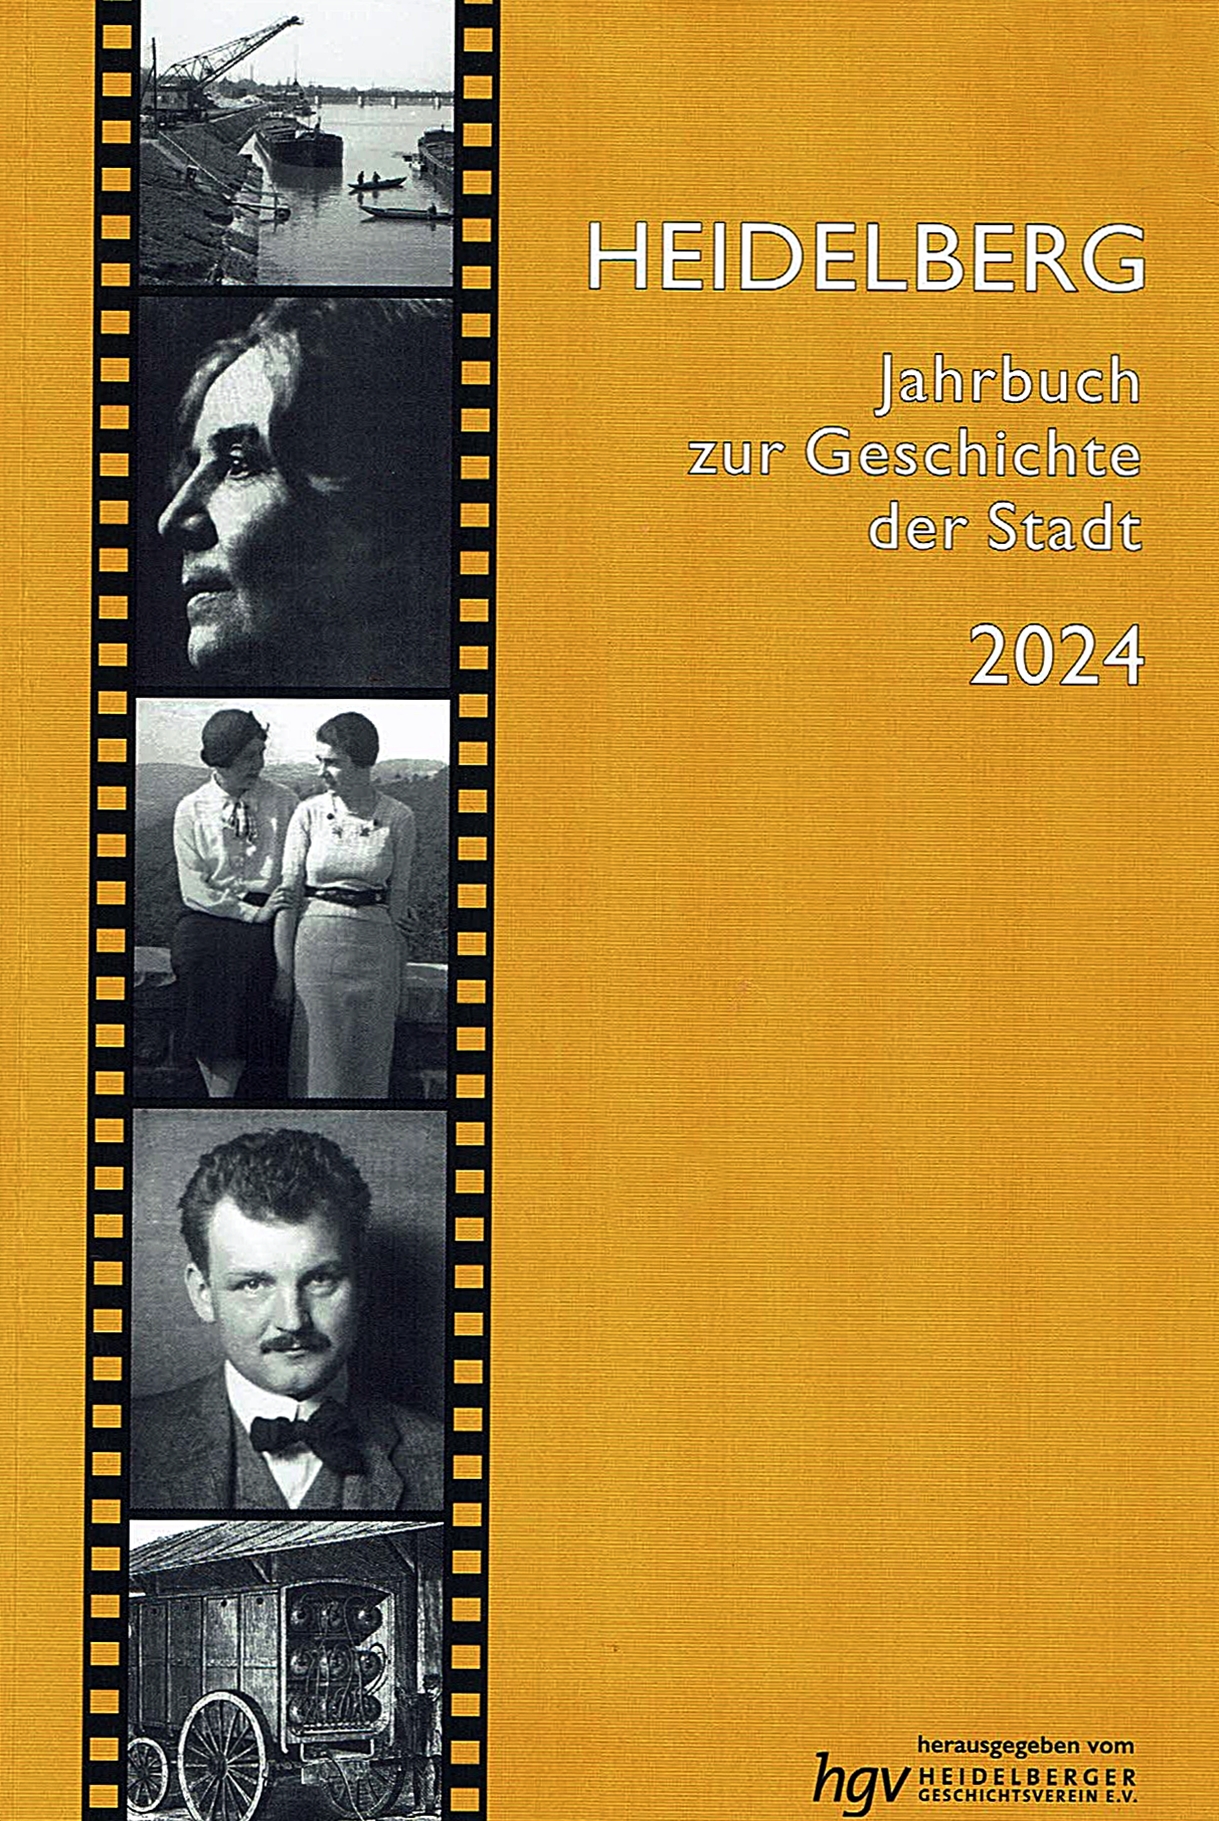 Heidelberger Jahrbuch 2024